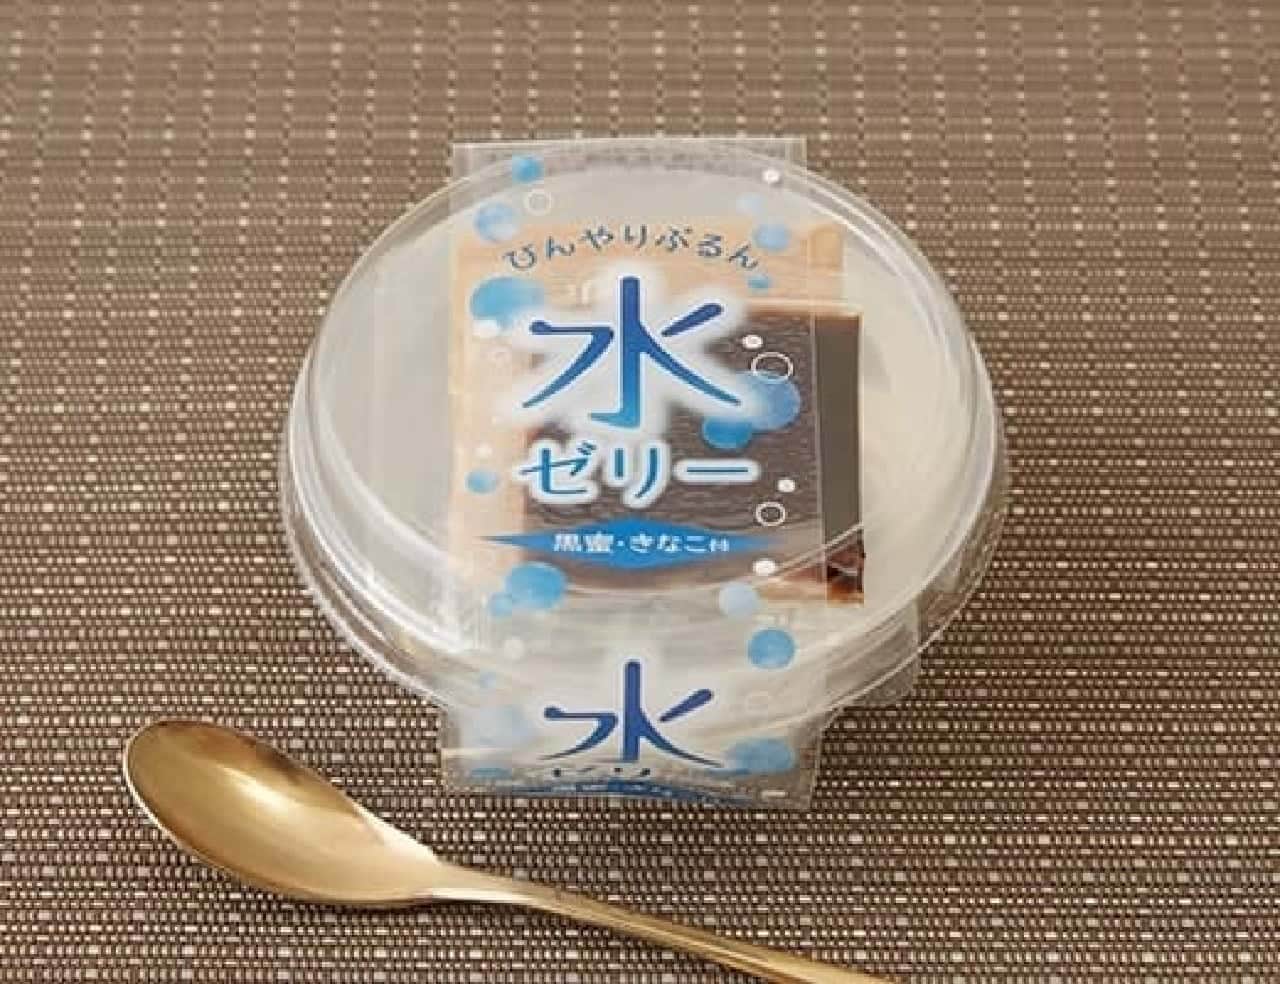 Lawson "Tokushima Sangyo Water Jelly 130g